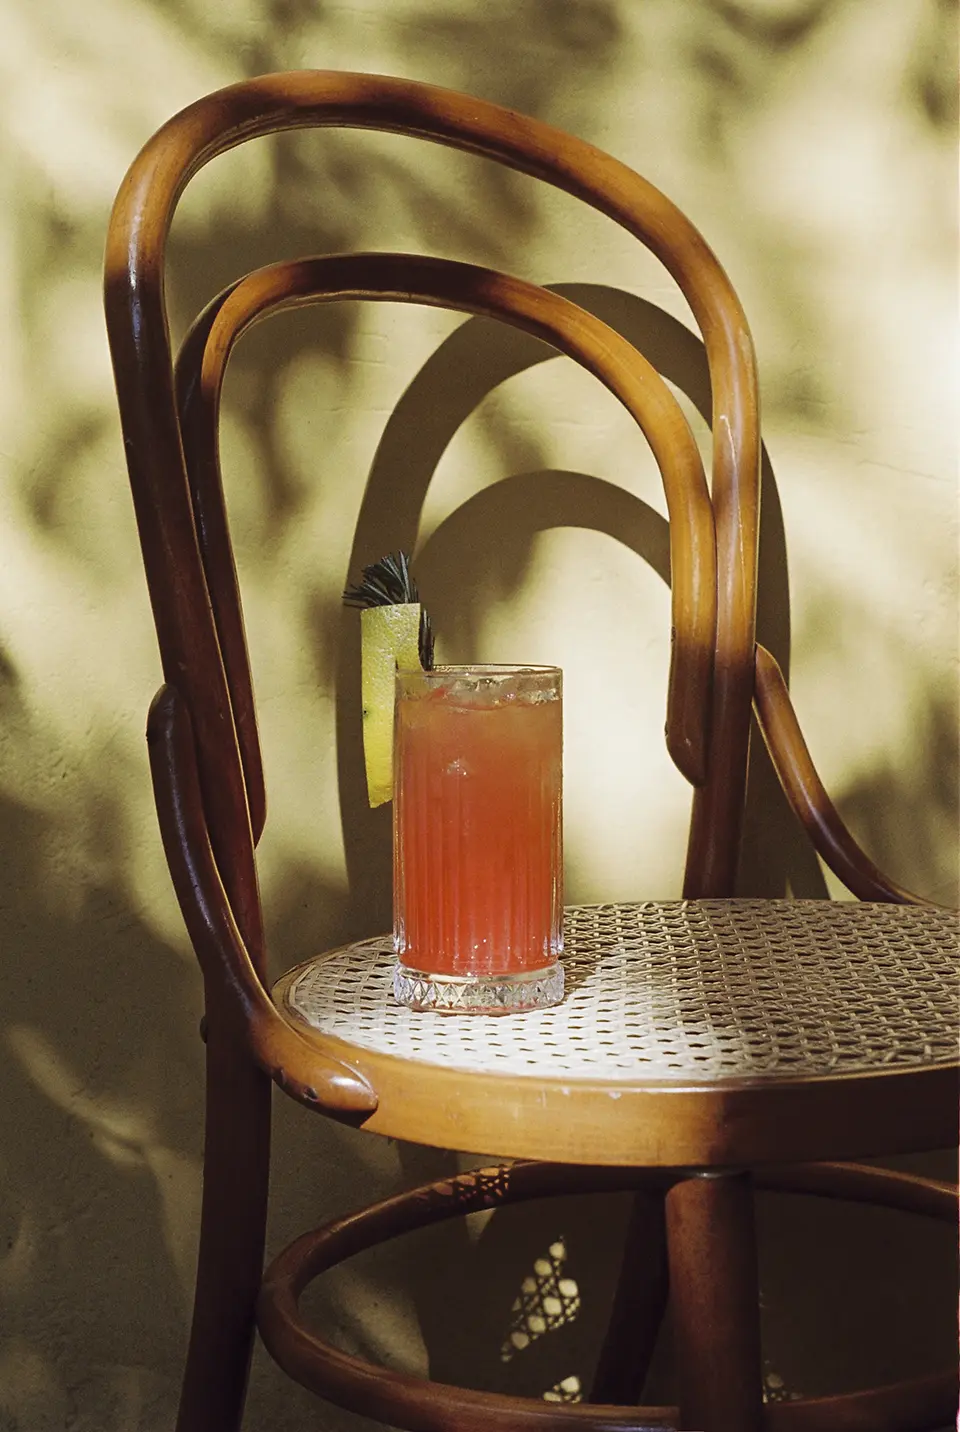 Um copo sobre uma cadeira de madeira cor de caramelo, com assento trançado. O copo está cheio de um drink avermelhado com gelo, um zest de limão siciliano e um ramo de alecrim.